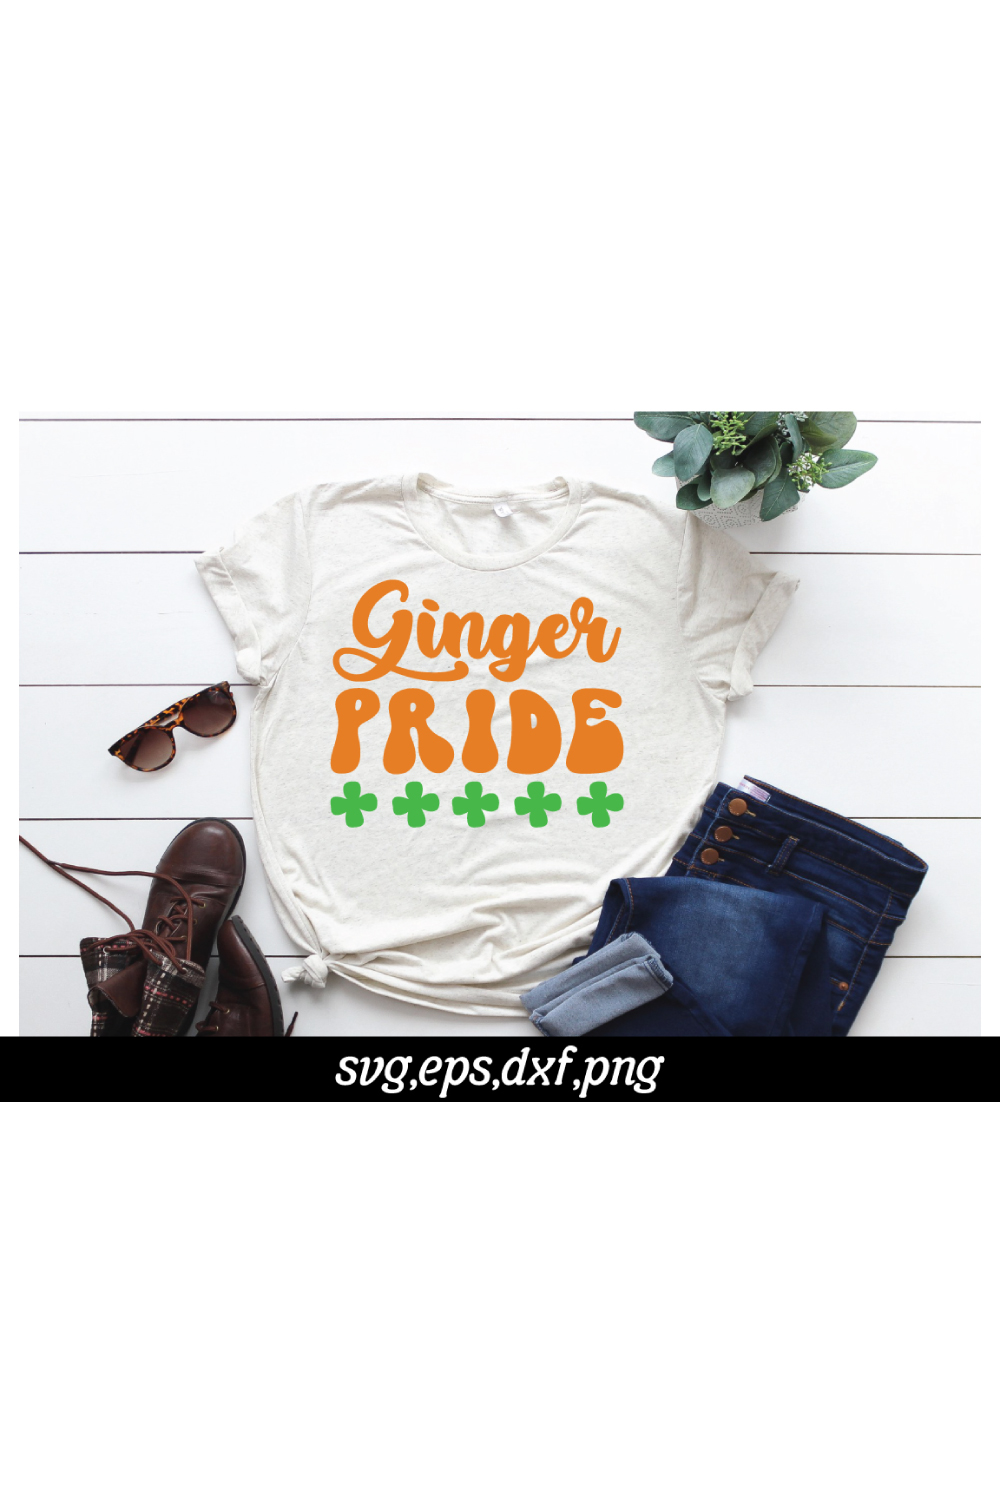 Ginger pride SVG pinterest preview image.